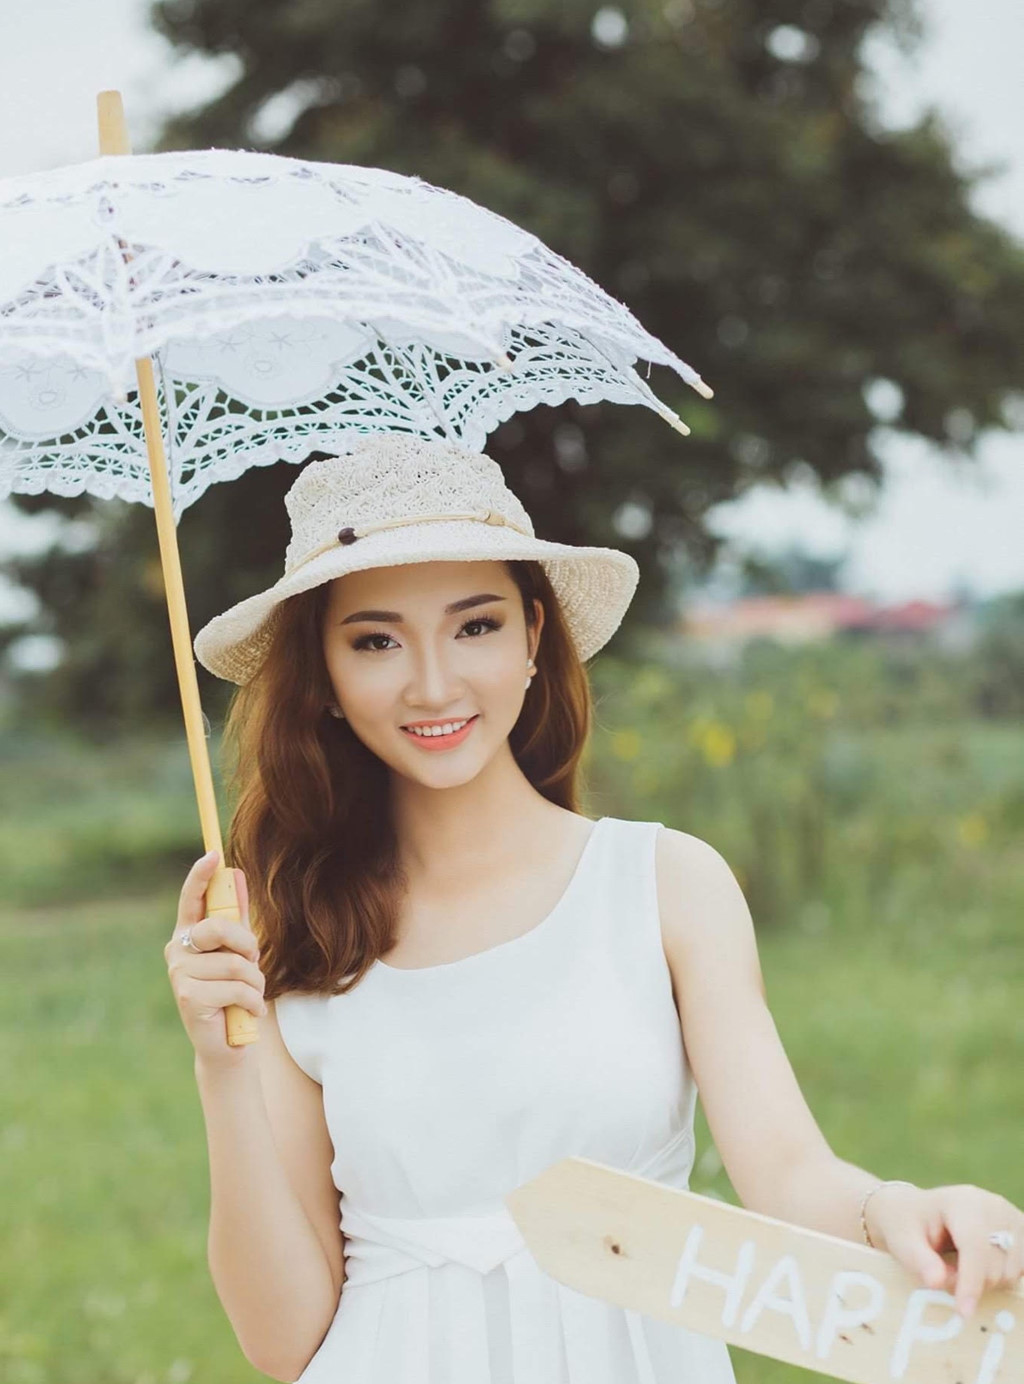 Những câu chuyện xúc động của thí sinh Hoa hậu Hoàn vũ Việt Nam 2017